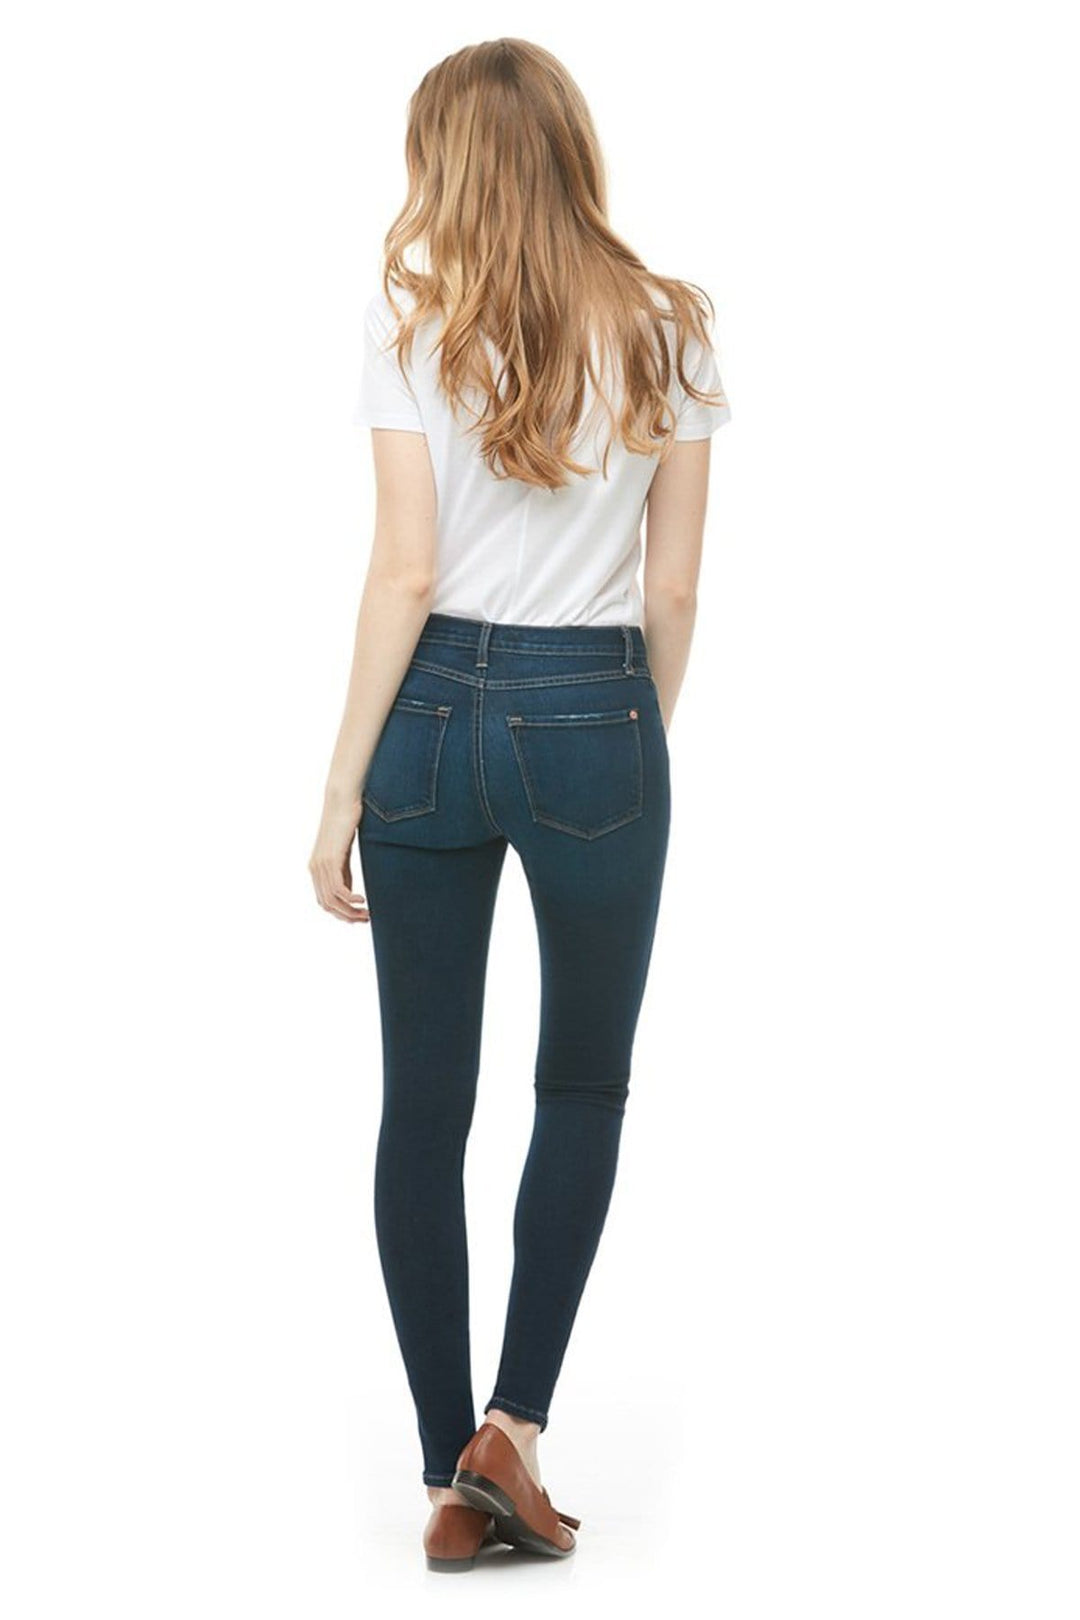 Yoga Jeans Rachel - Jean skinny - Taille classique - Indie foncé